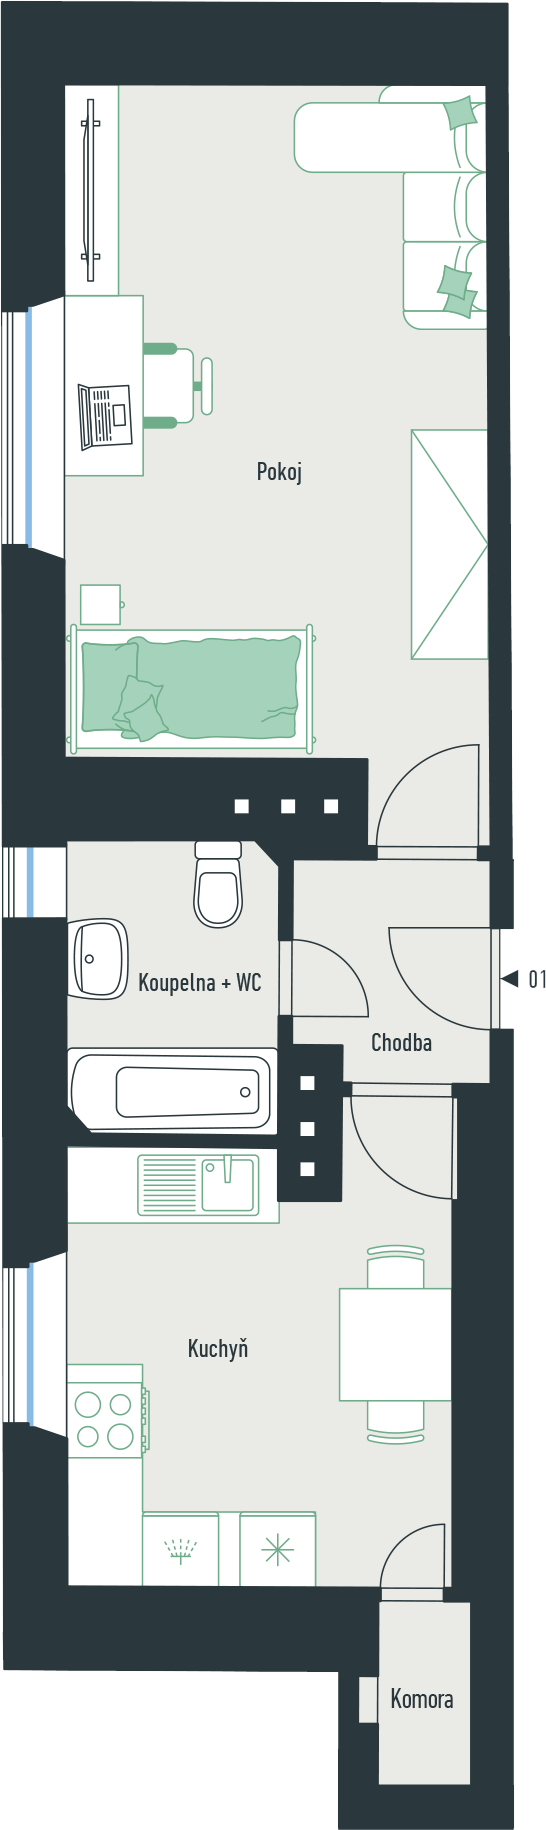 Ubytovací jednotka č. 1 o dispozici 1+1 a podlahové ploše 40,2 m² 1+1